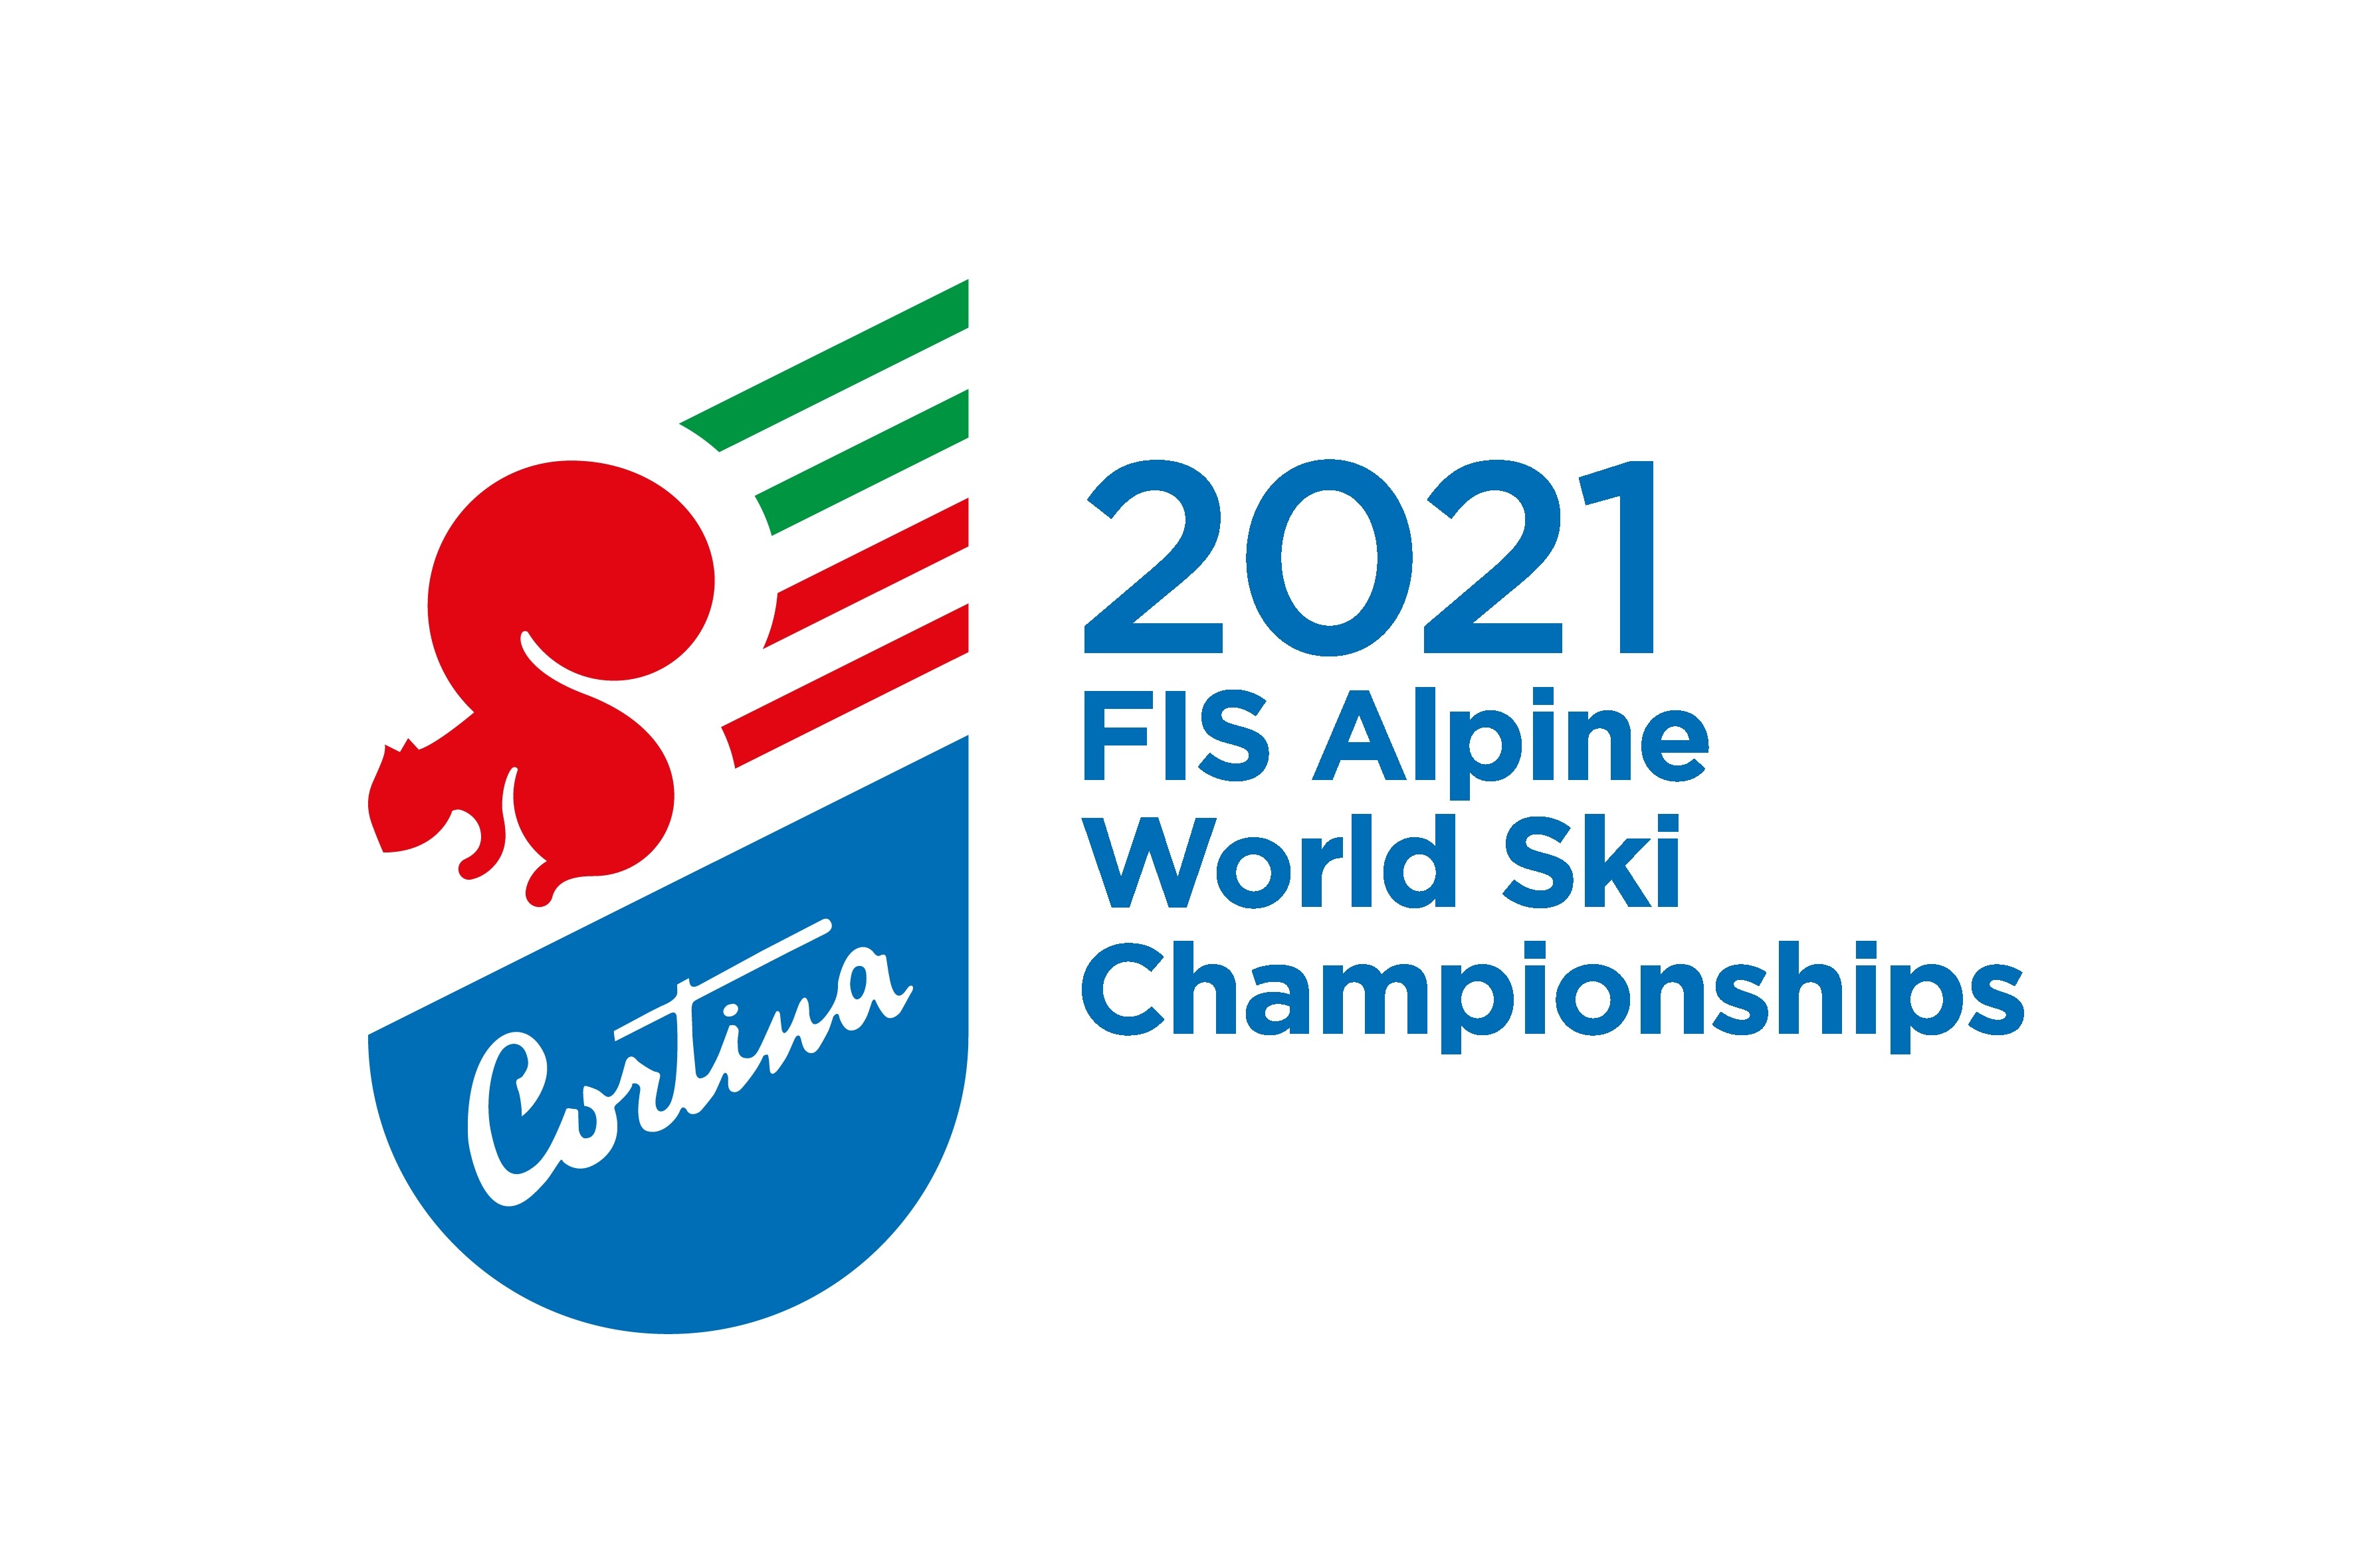 Fondazione Cortina 2021